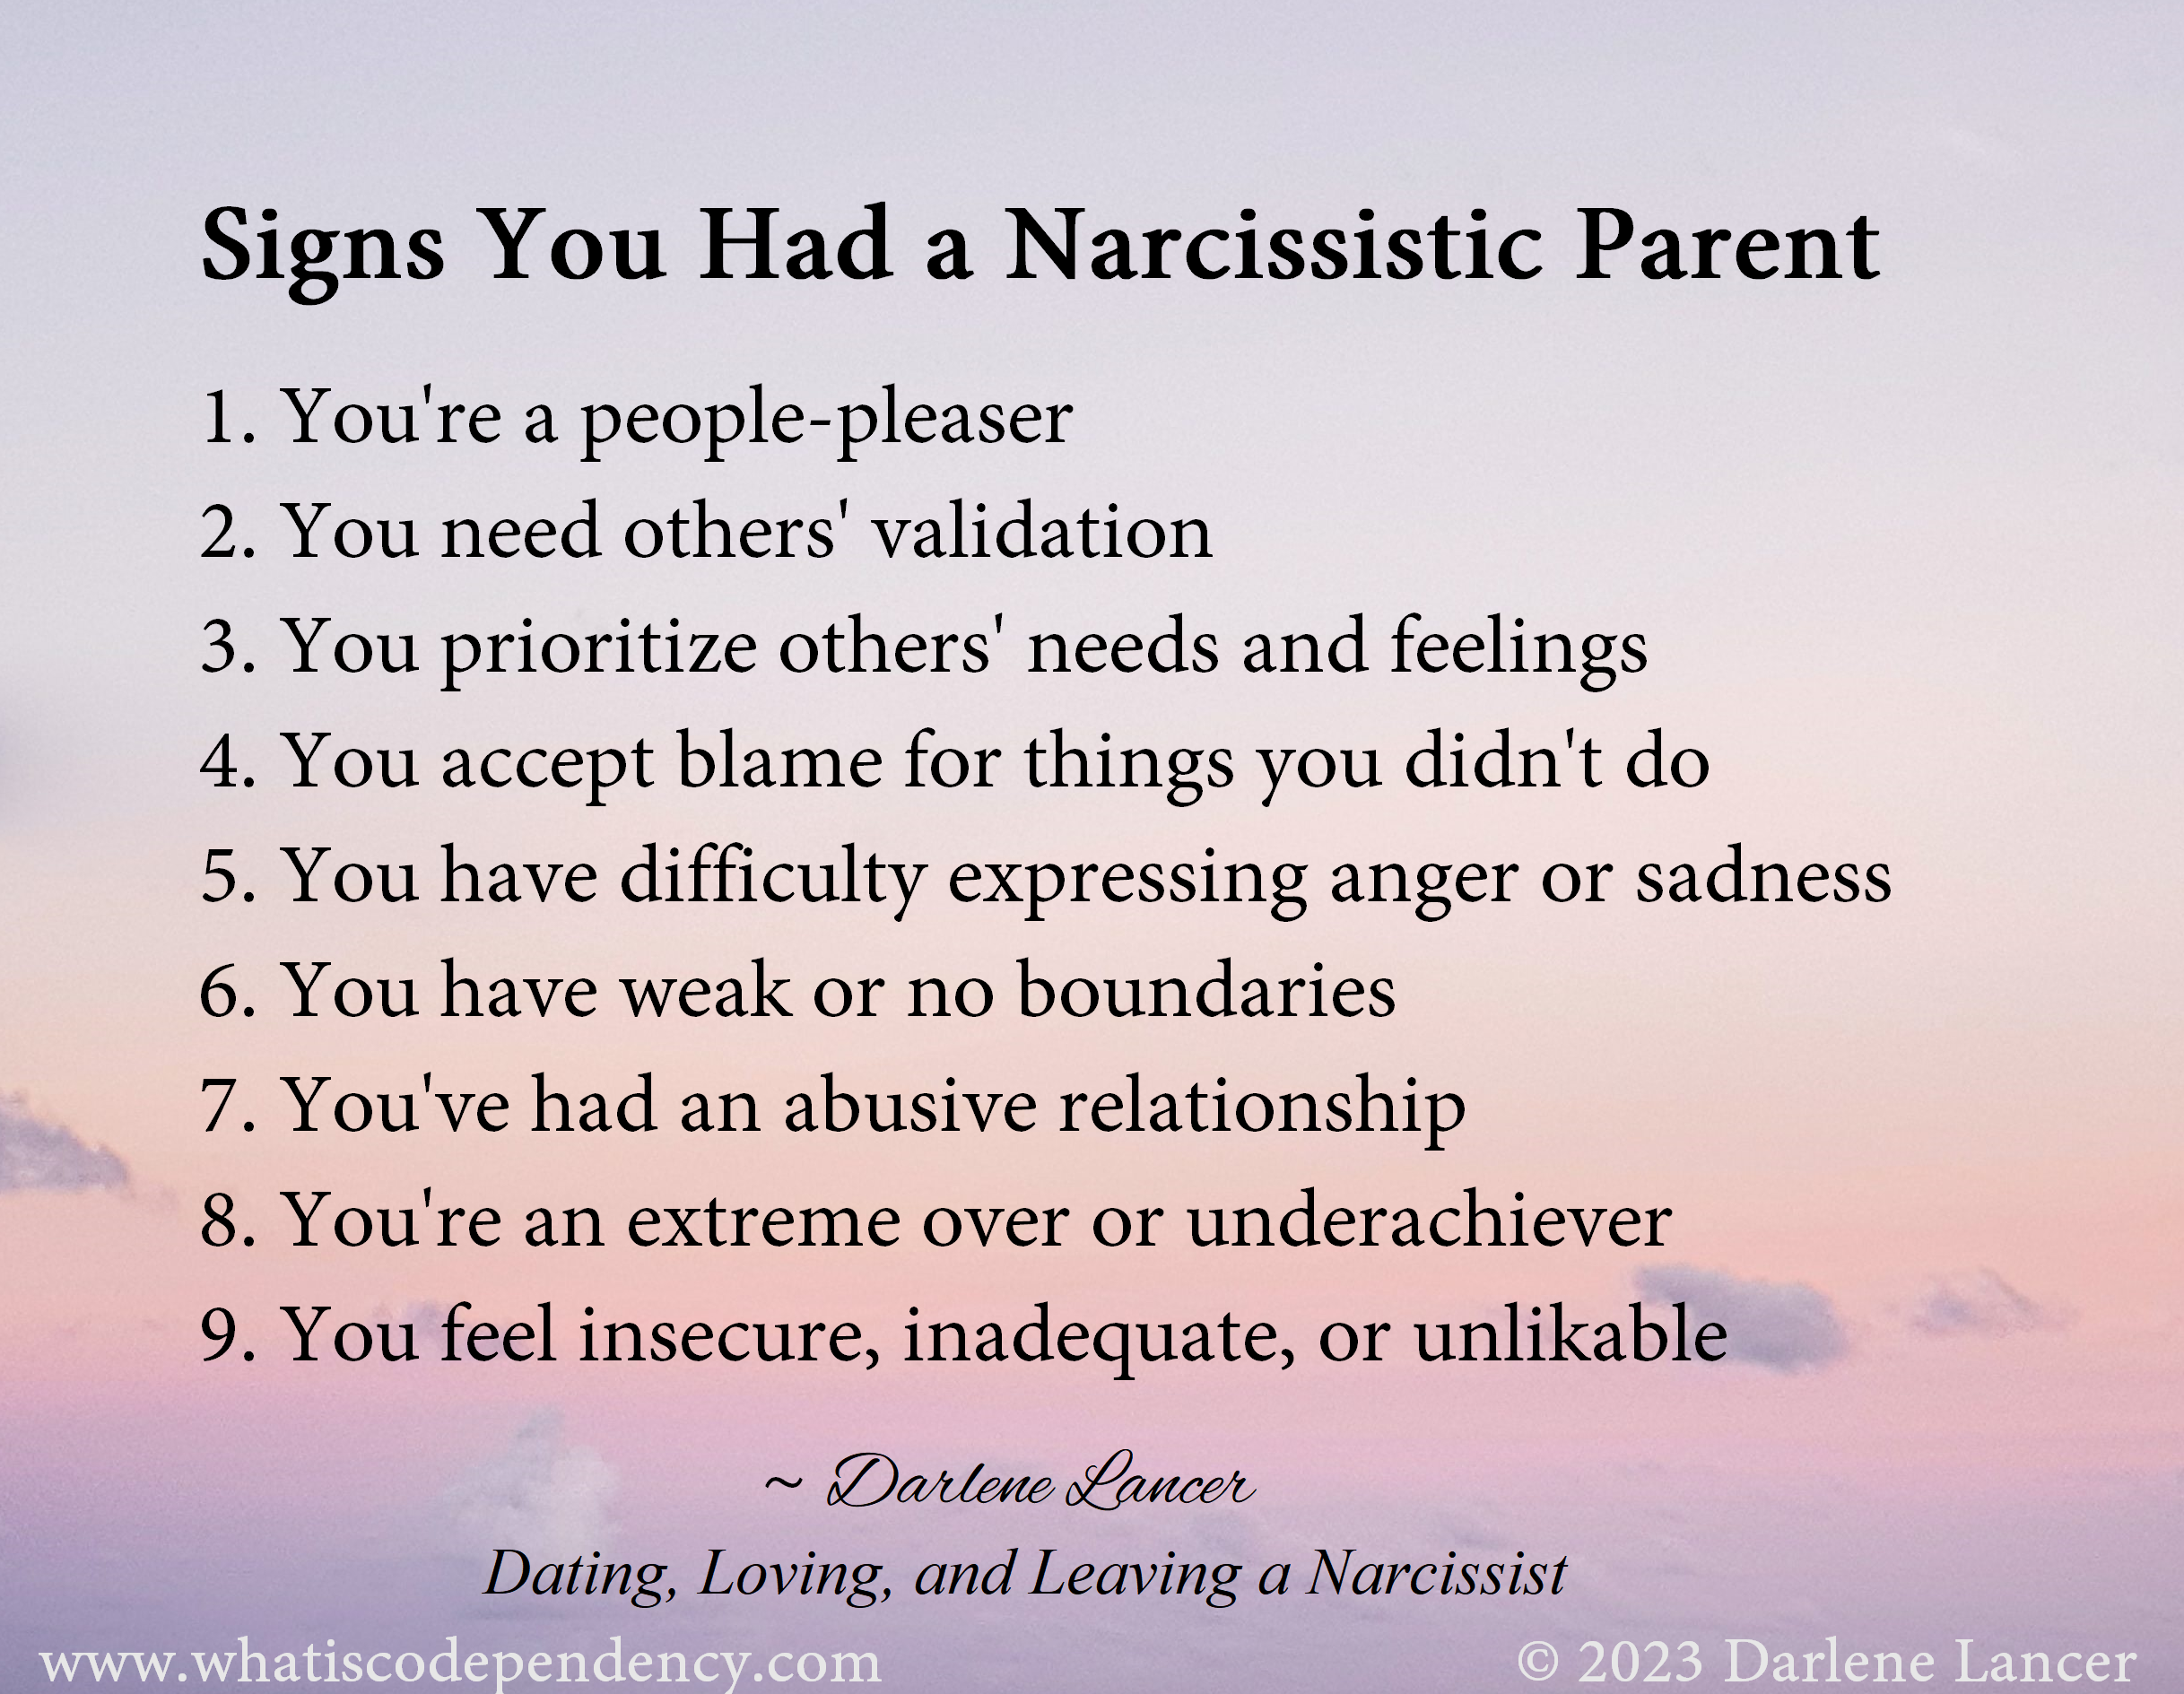 Narcissistic Parent